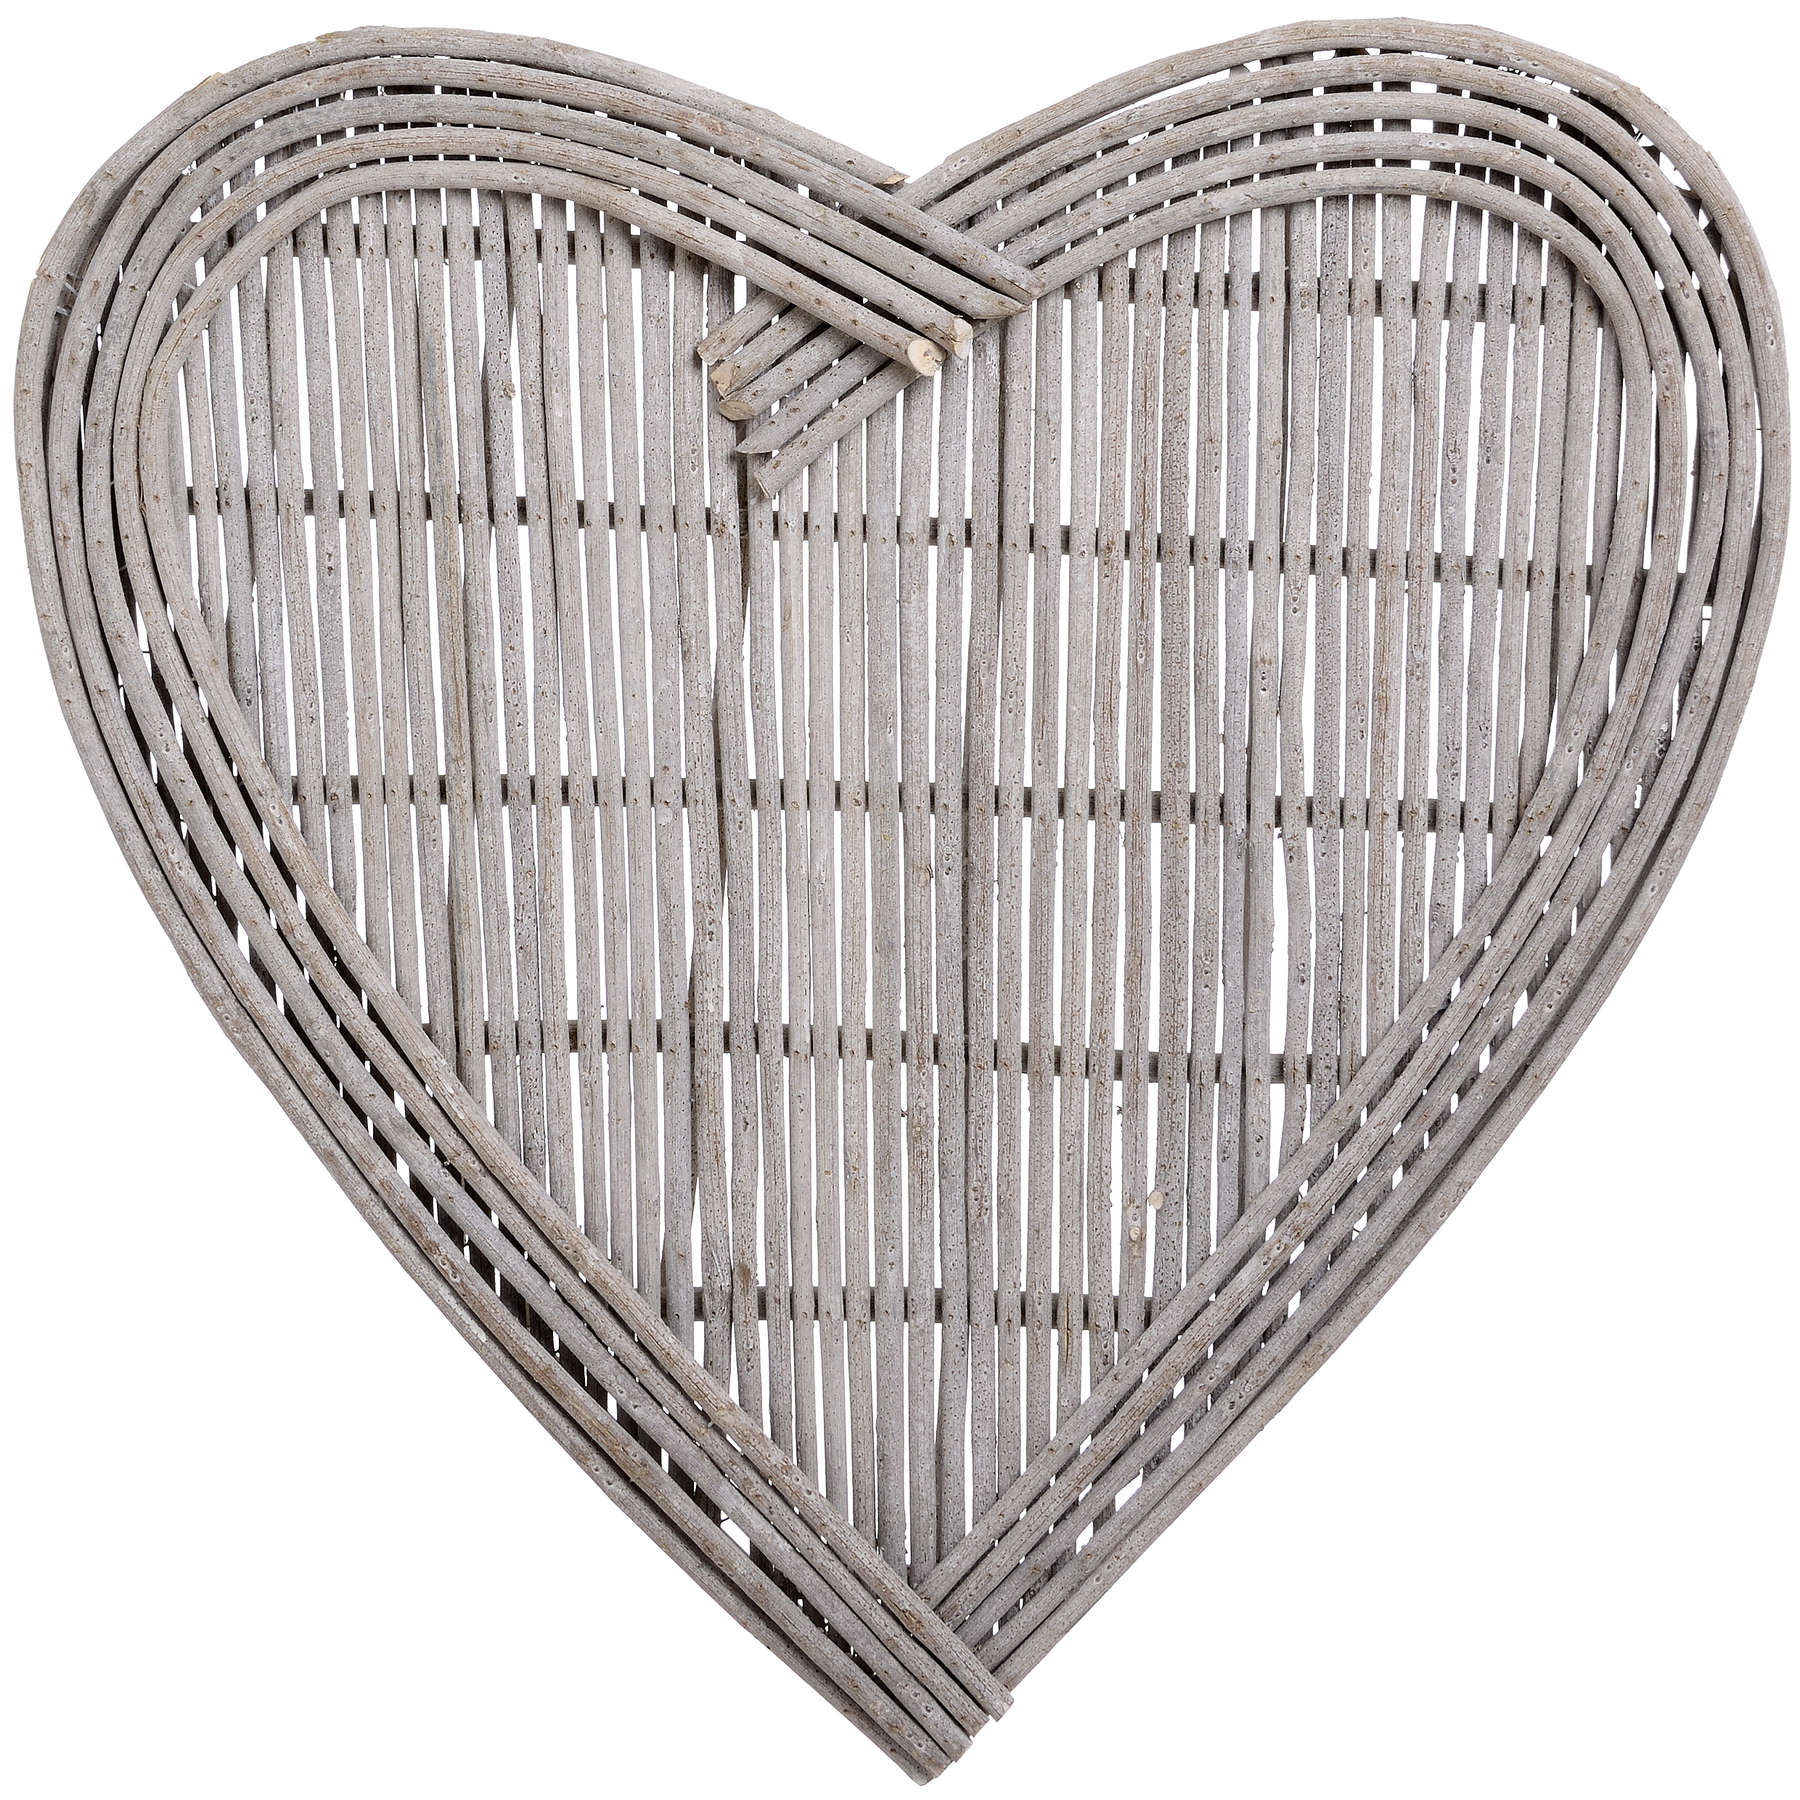 Medium Heart Wicker Wall Art - Image 1